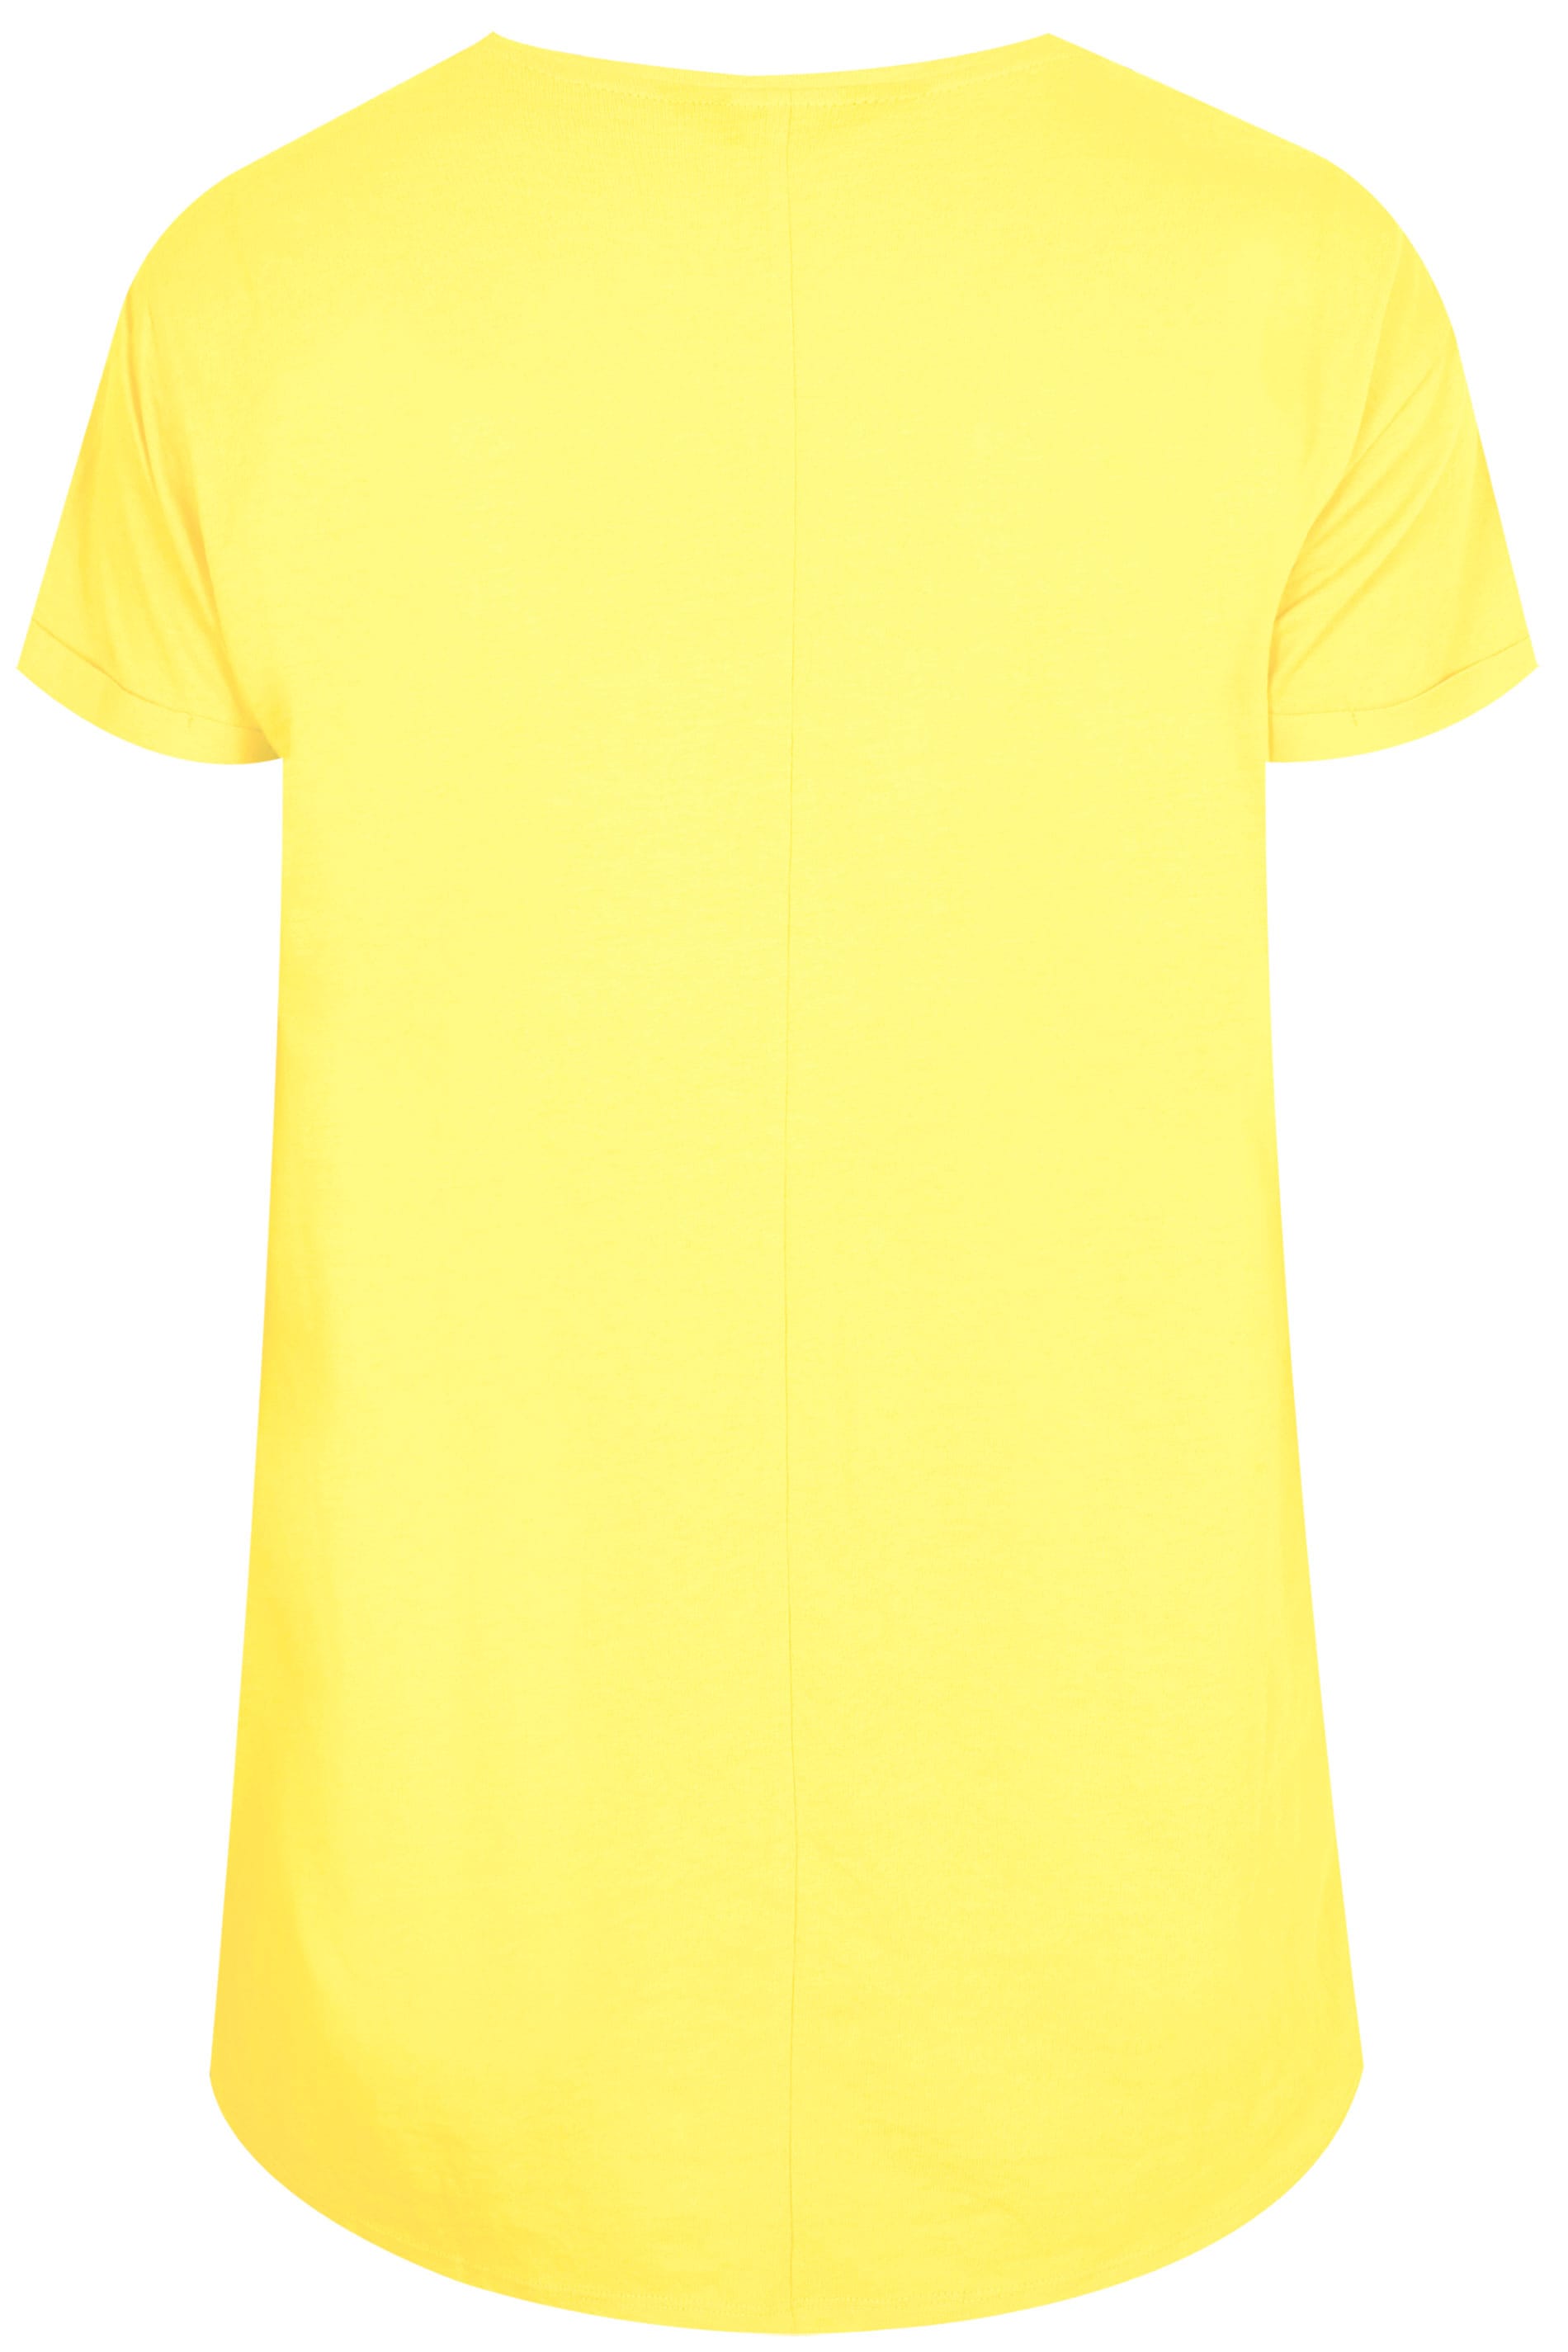 599+ Yellow T Shirt Mockup Free Yellowimages Mockups